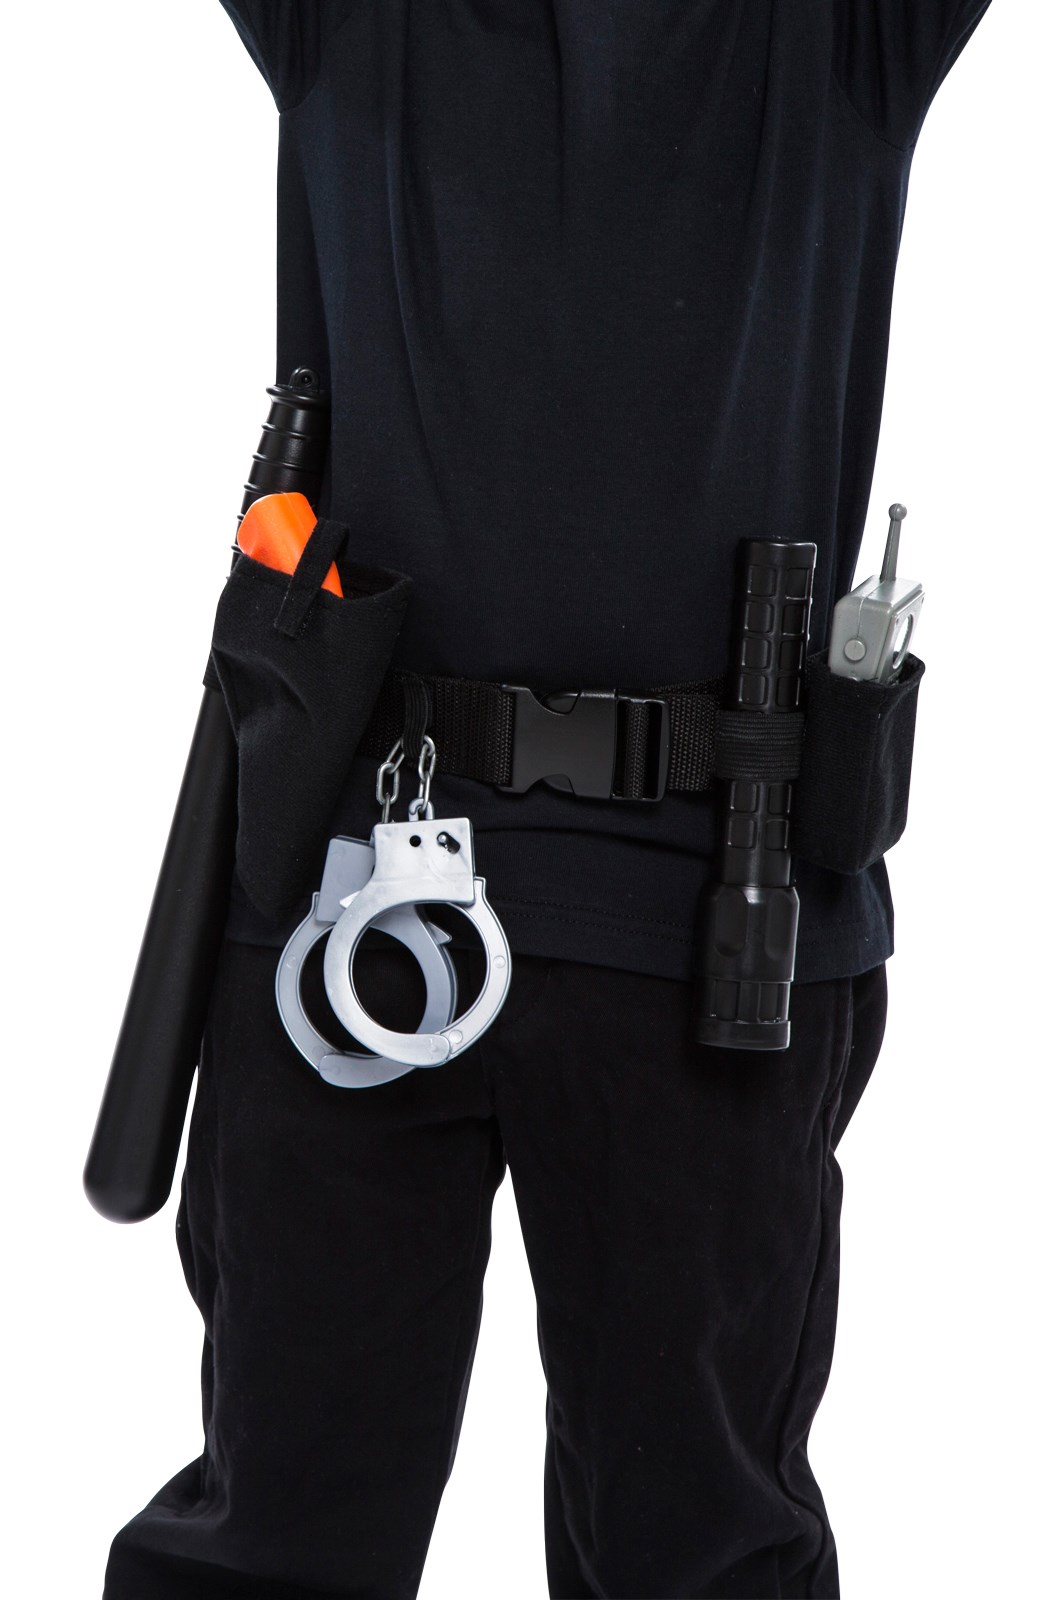 Police Officer Belt